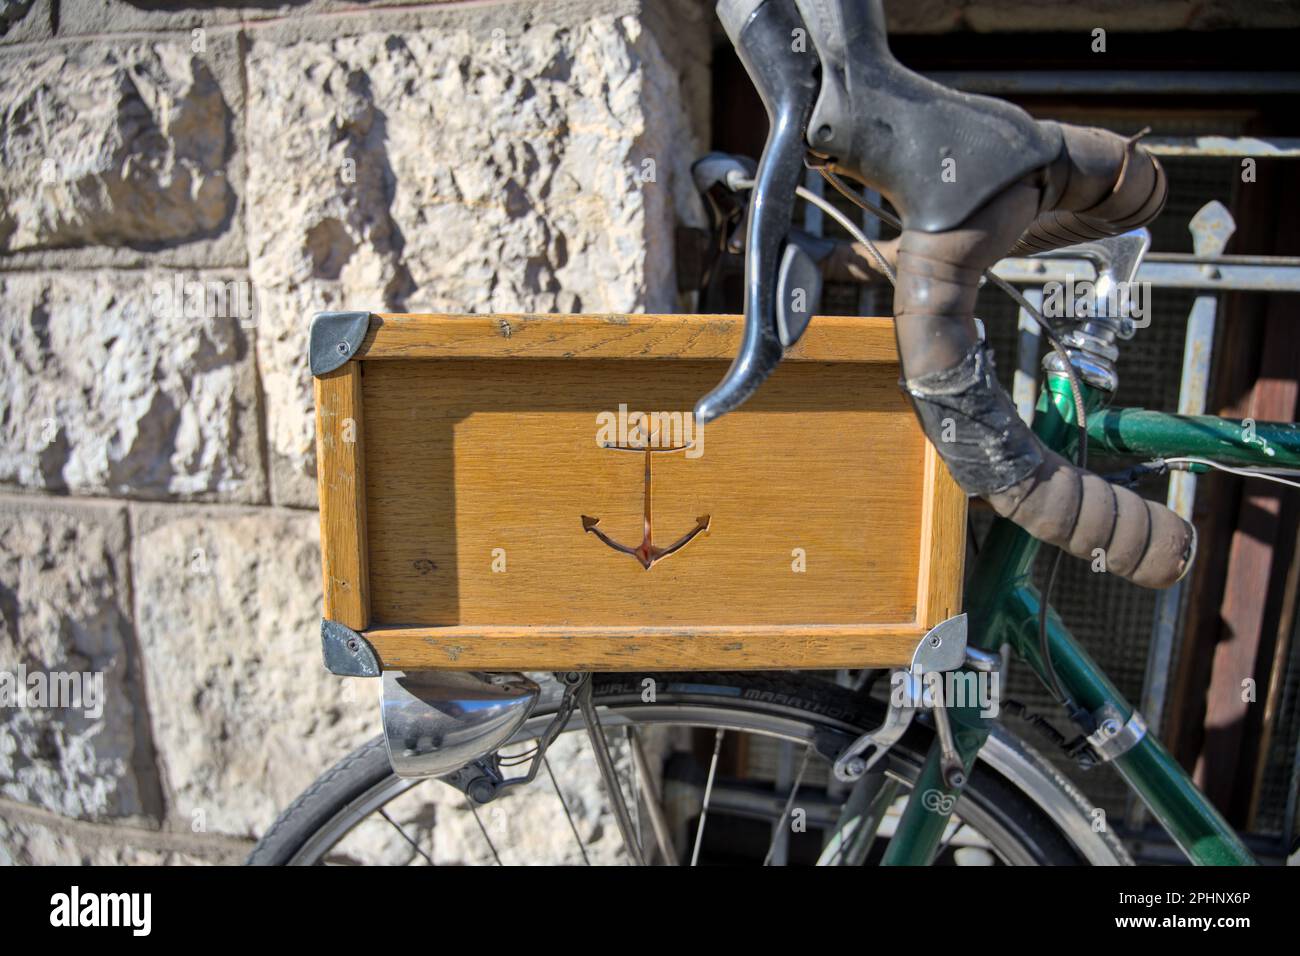 Der Anker wurde in einen Holzkasten auf einem Fahrrad geschnitzt Stockfoto